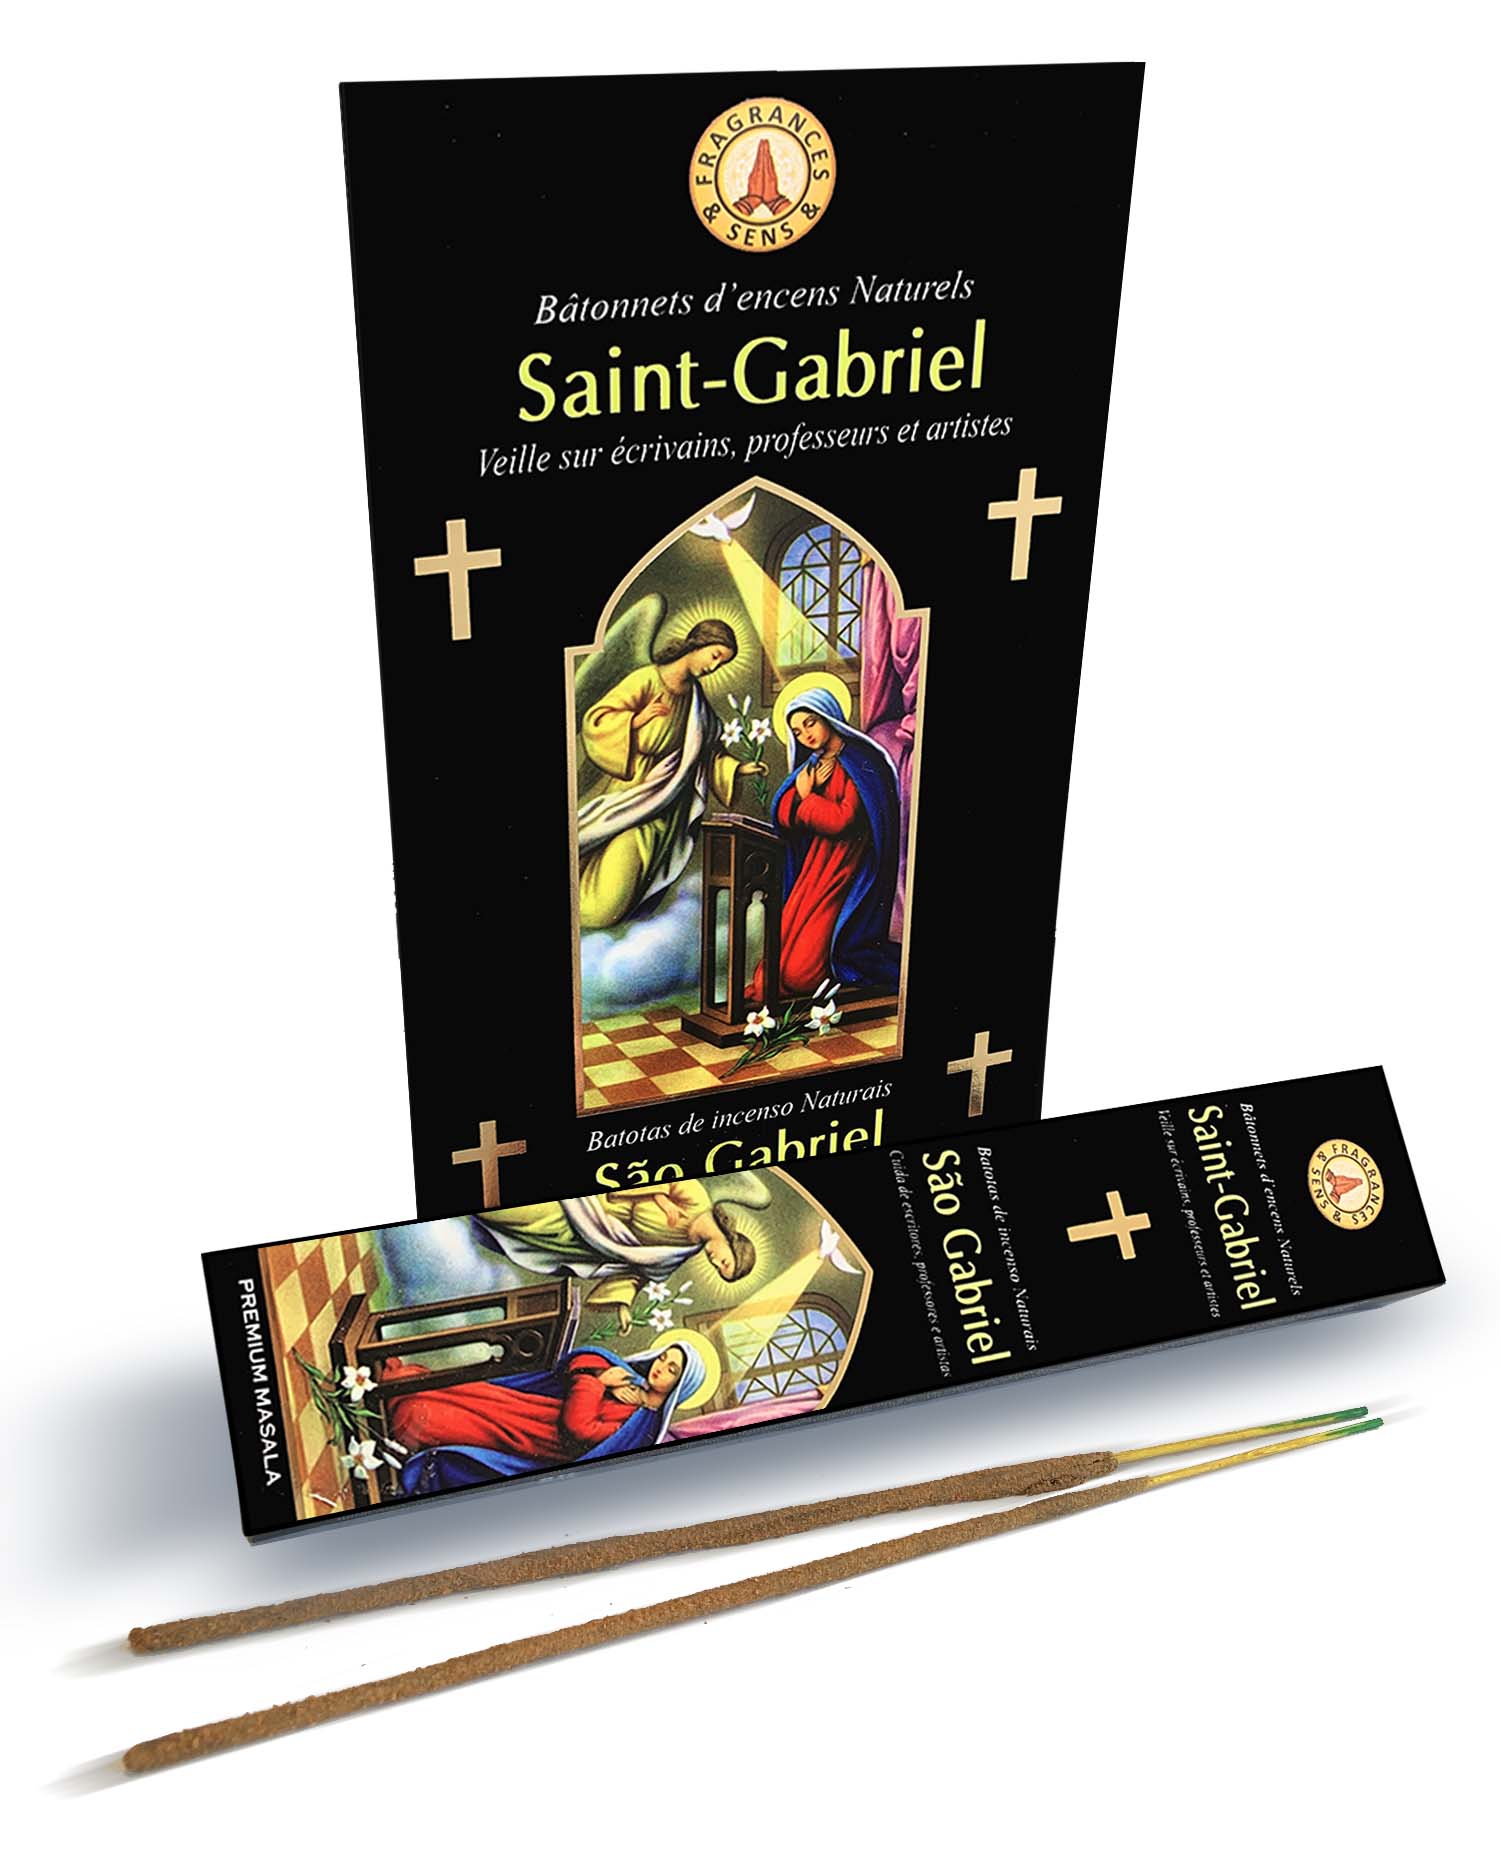 Kadzidło Fragrances & Sens Saint-Gabriel masala 15g